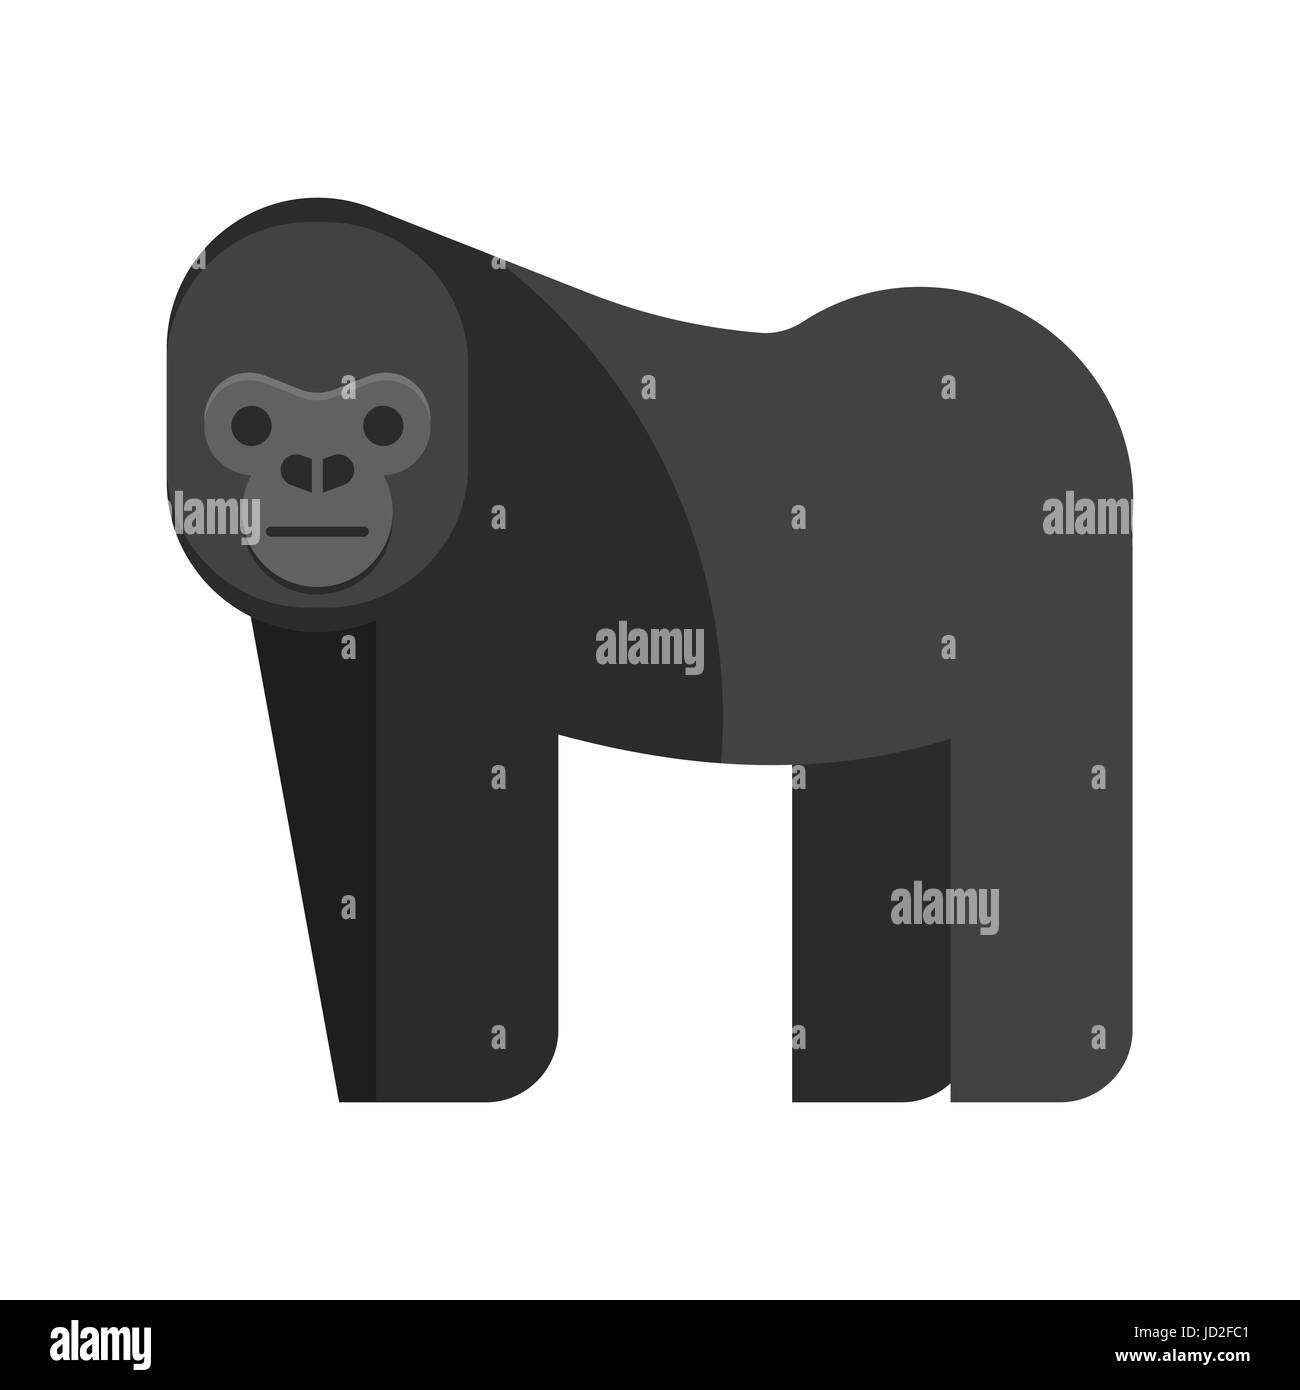 Vektorgrafik flachen Stil des Gorillas. Symbol für das Web. Isoliert auf weißem Hintergrund. Stock Vektor